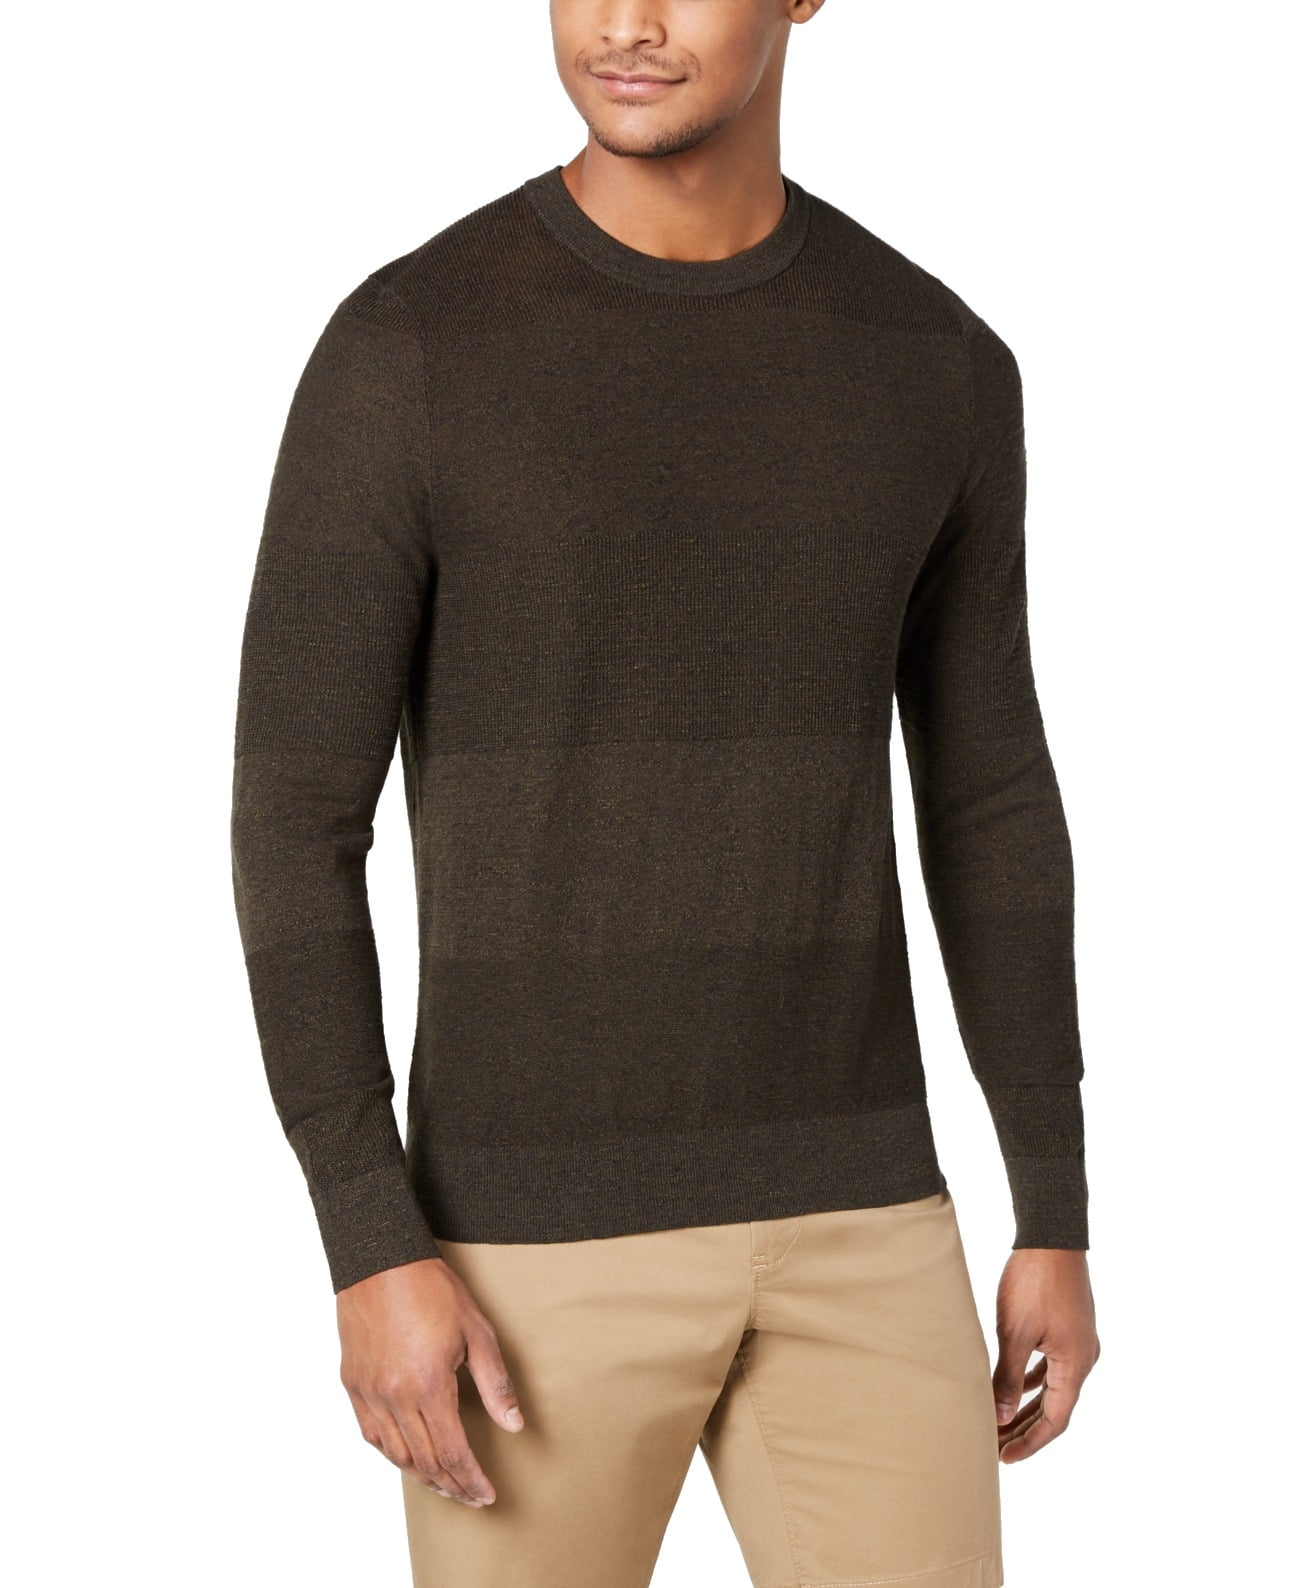 Michael Kors - Mens Sweater Olive Crewneck Ribbed-Trim XL - Walmart.com ...